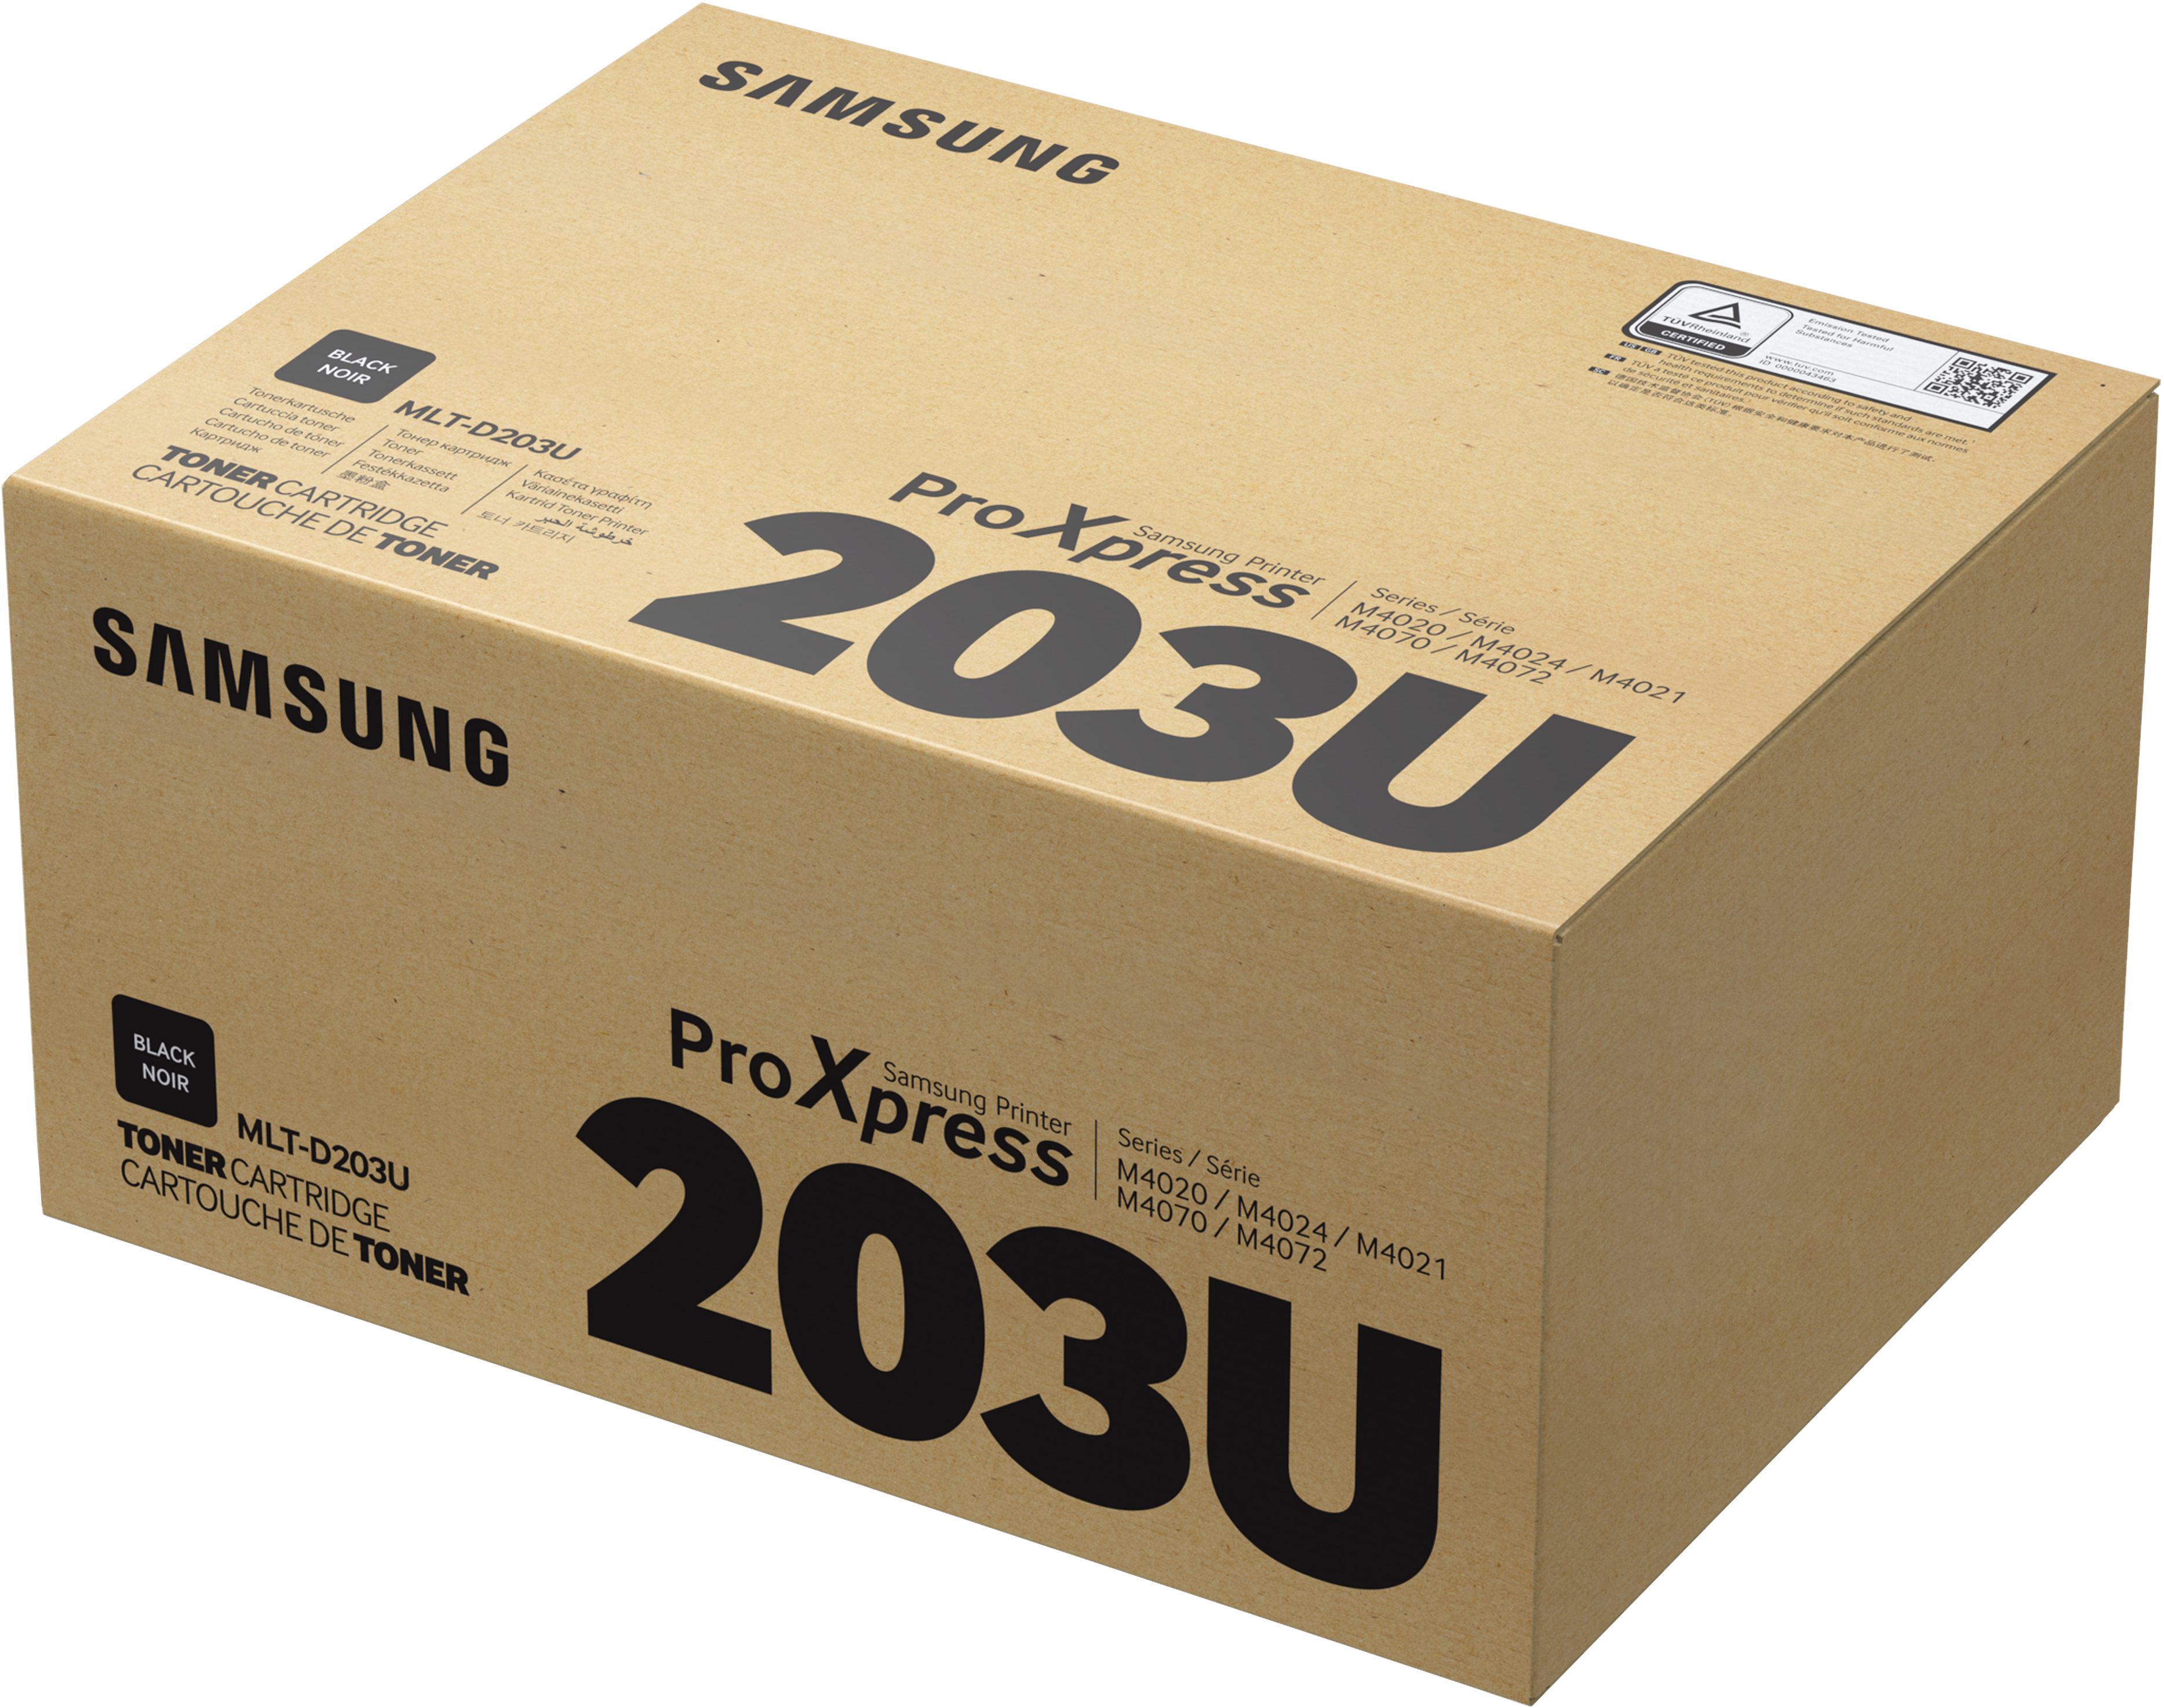 Toner Compatible Samsung D203U, Para M4020/M4070